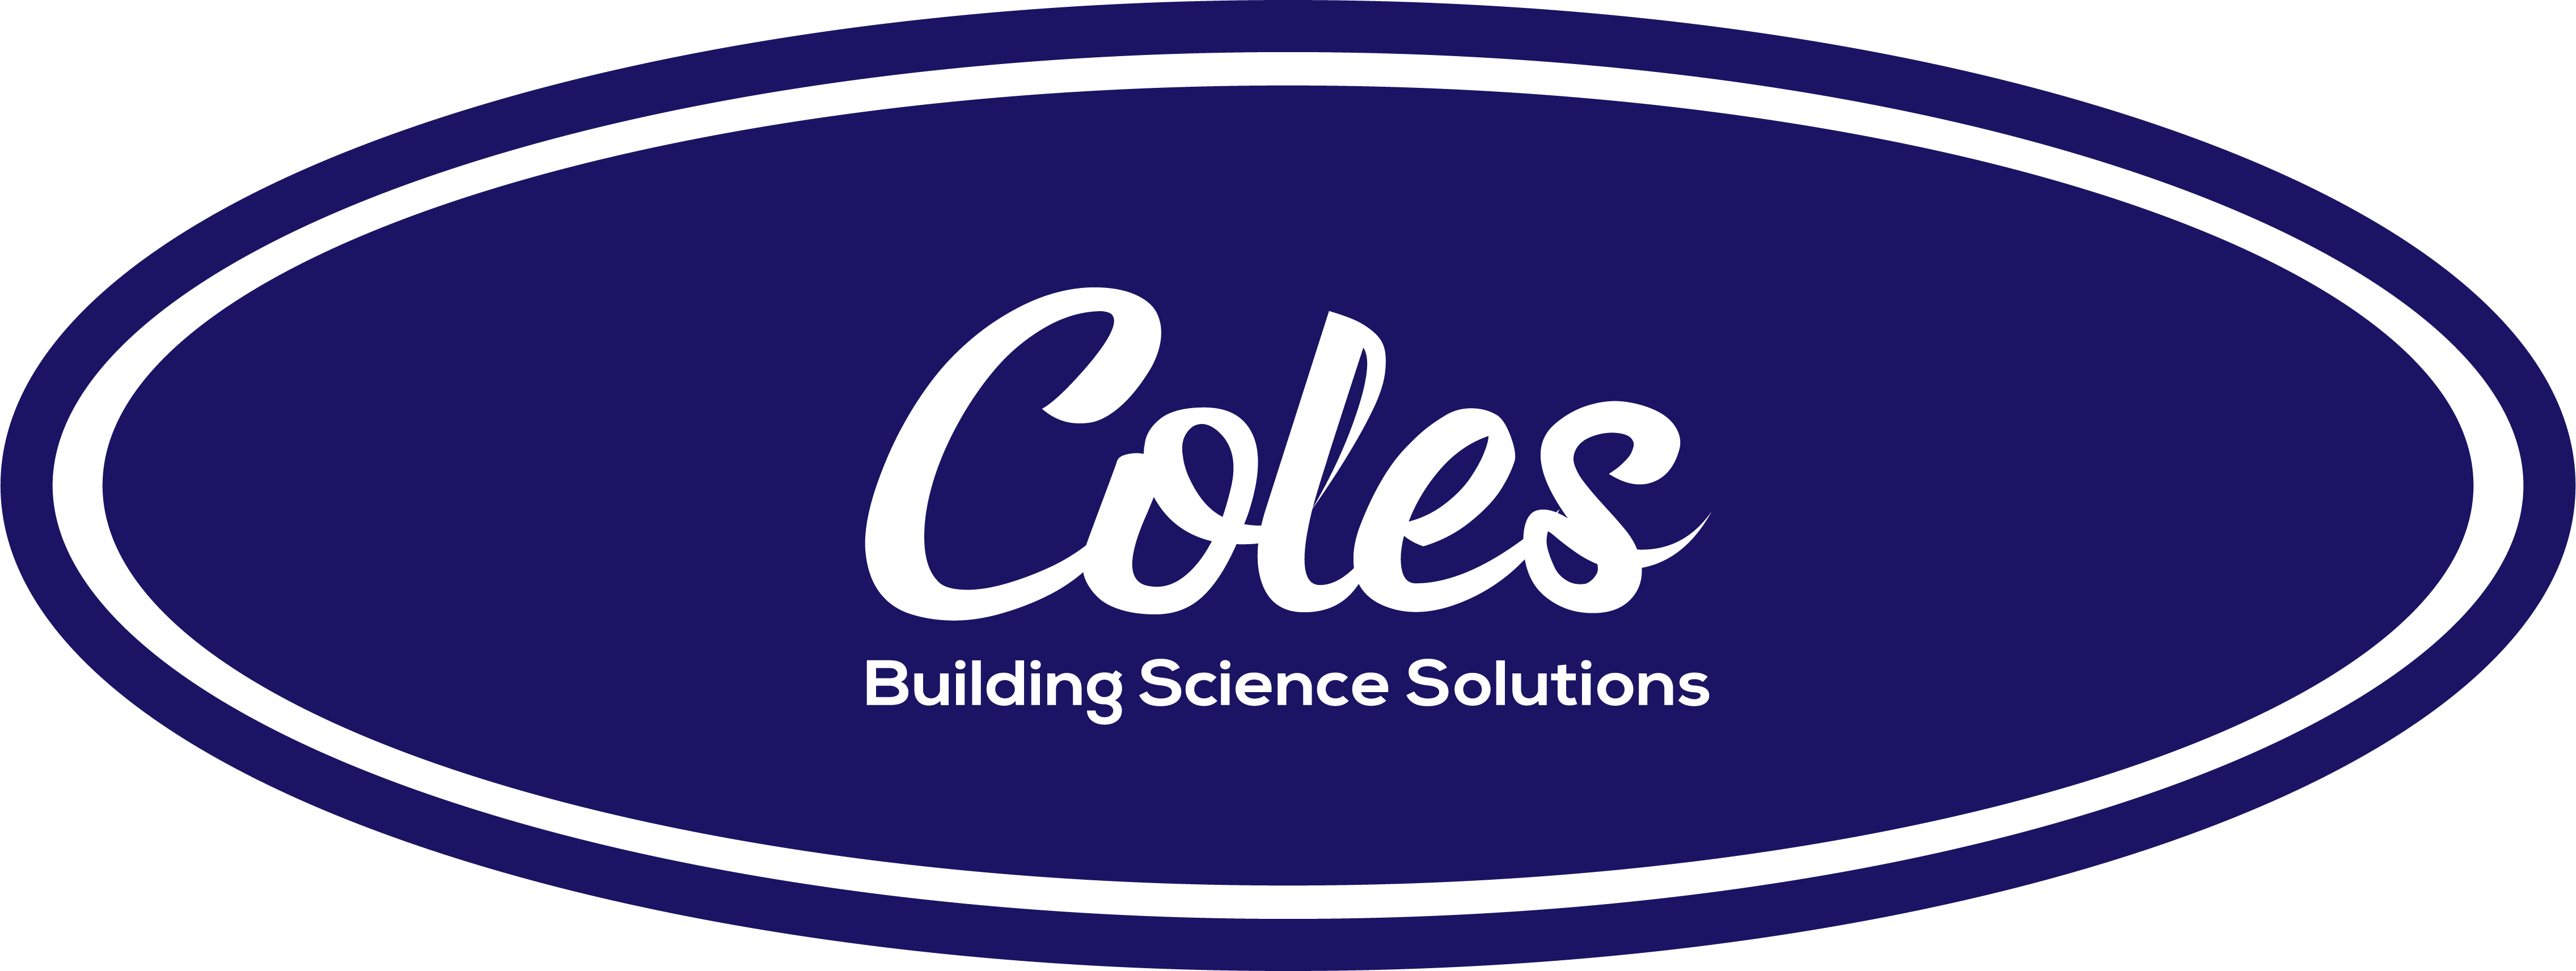 SWFL Building Science company logo